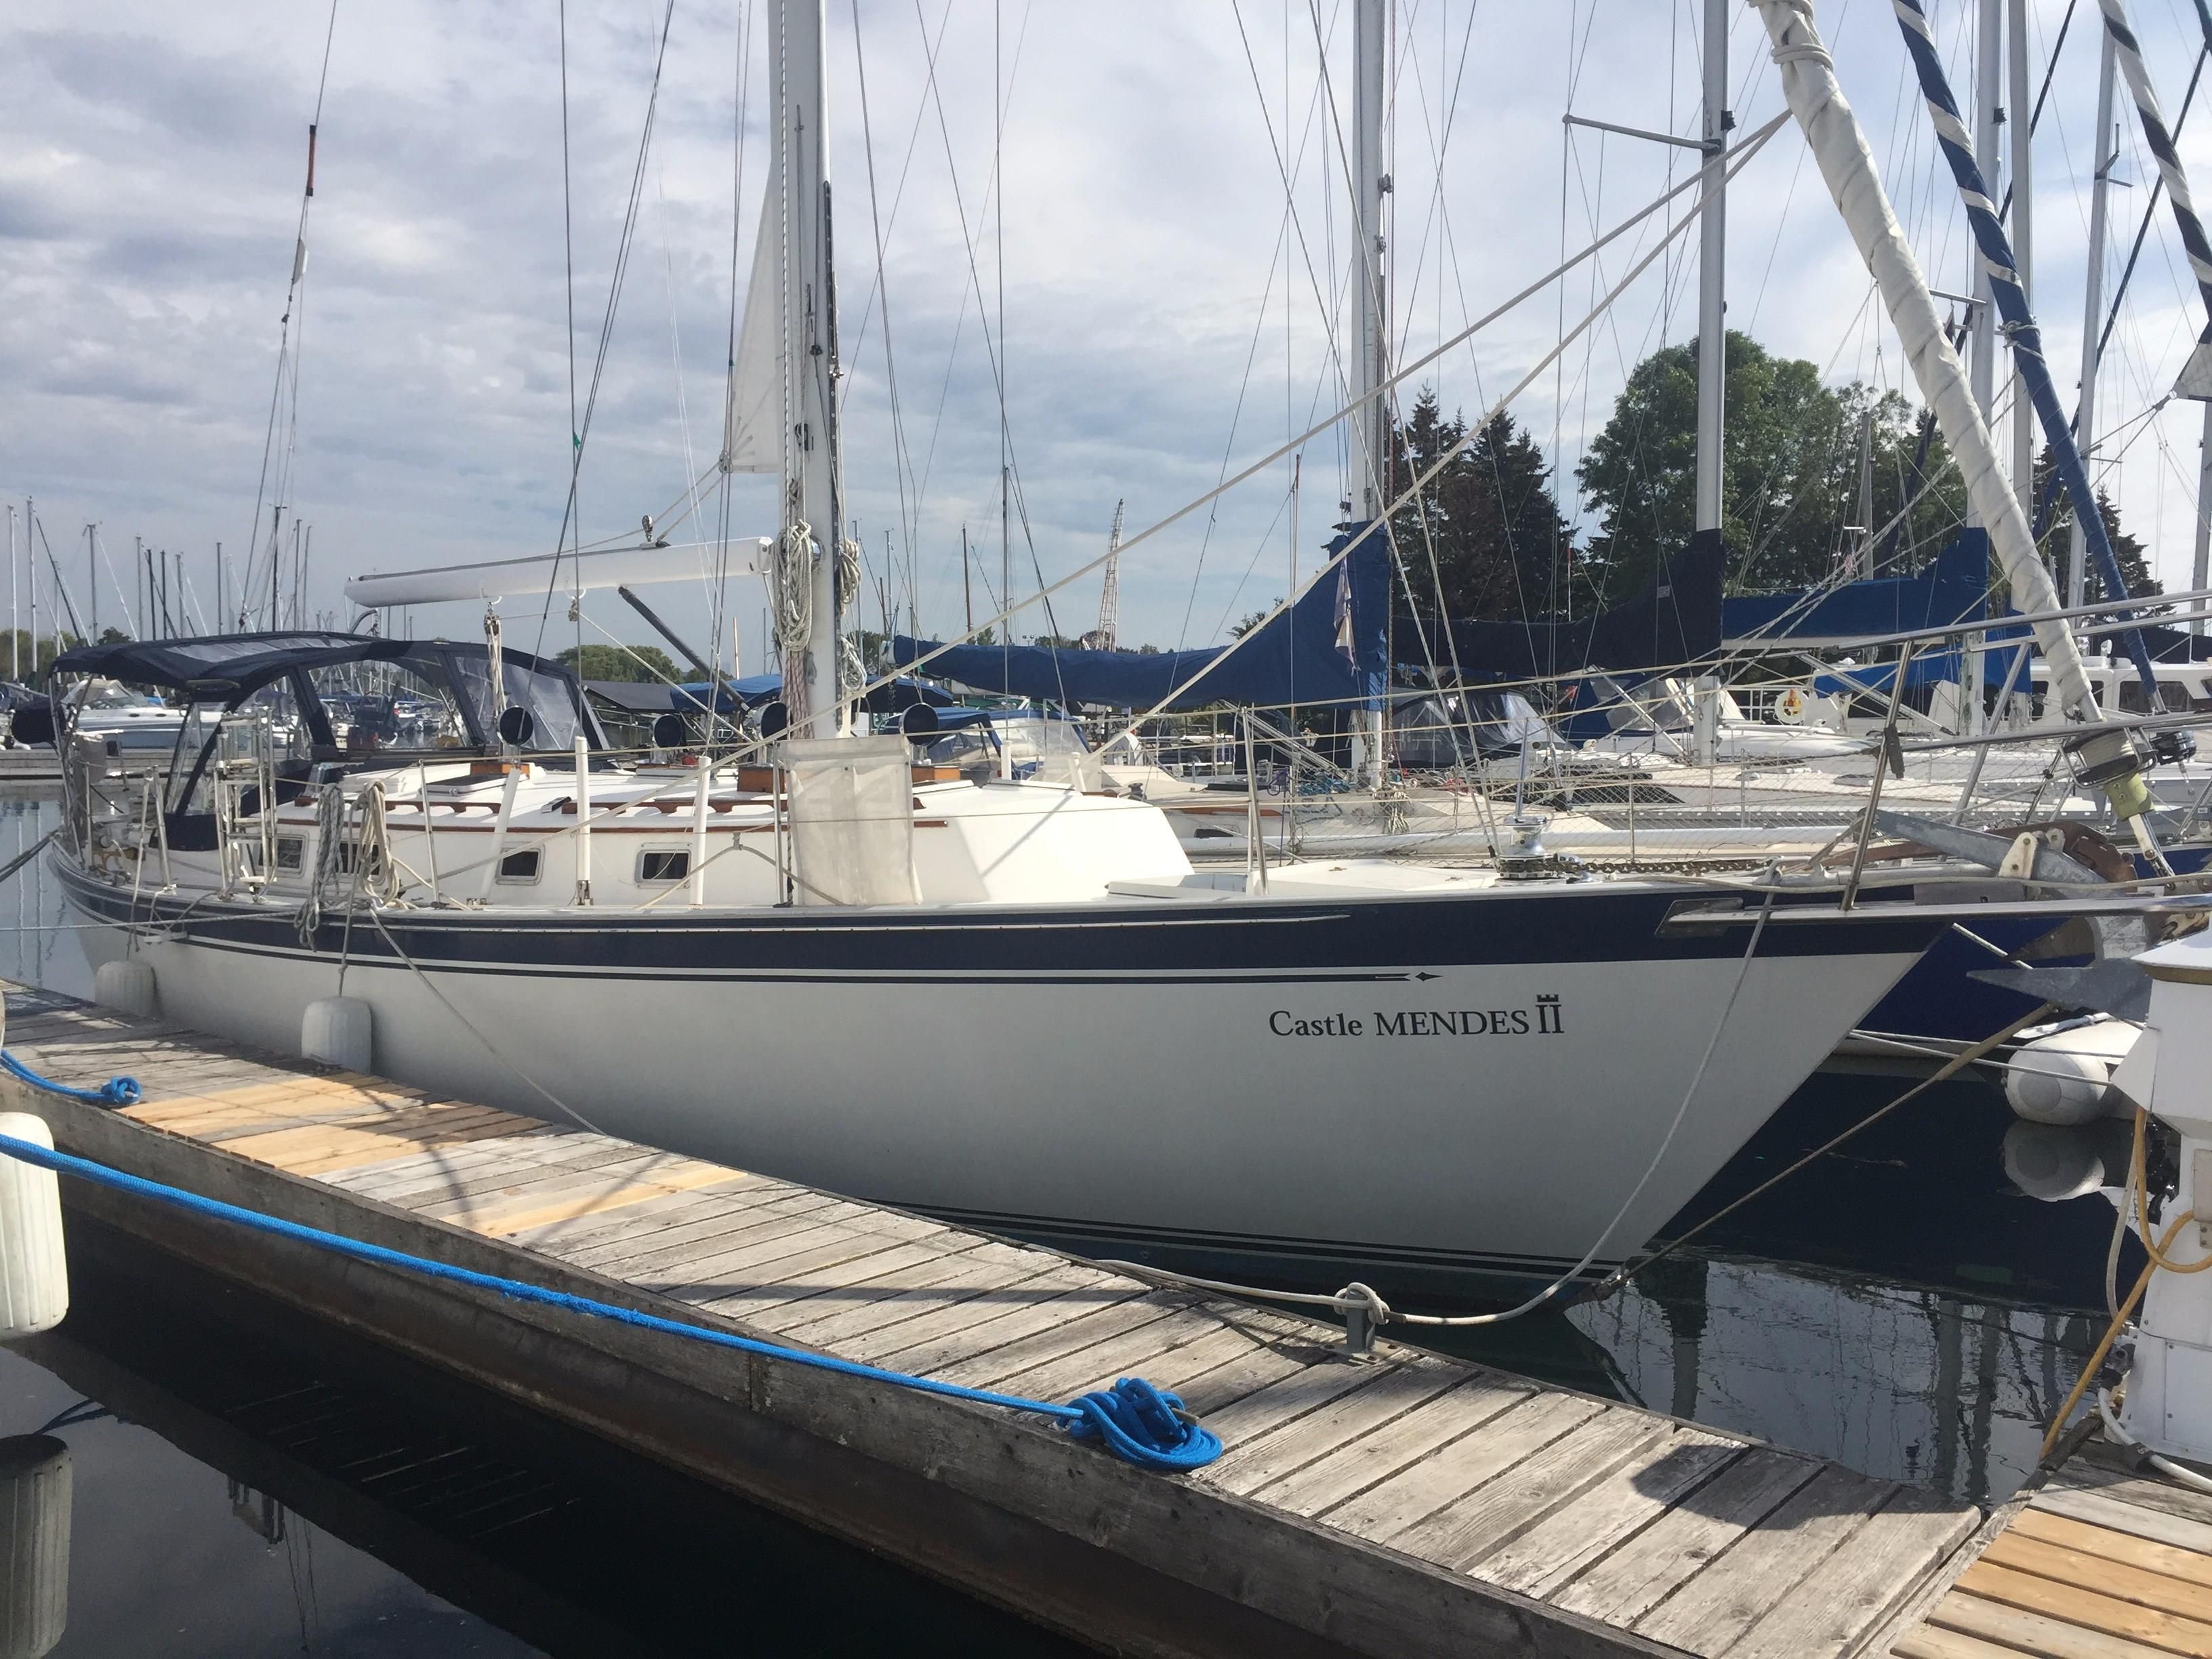 niagara 42 sailboat review